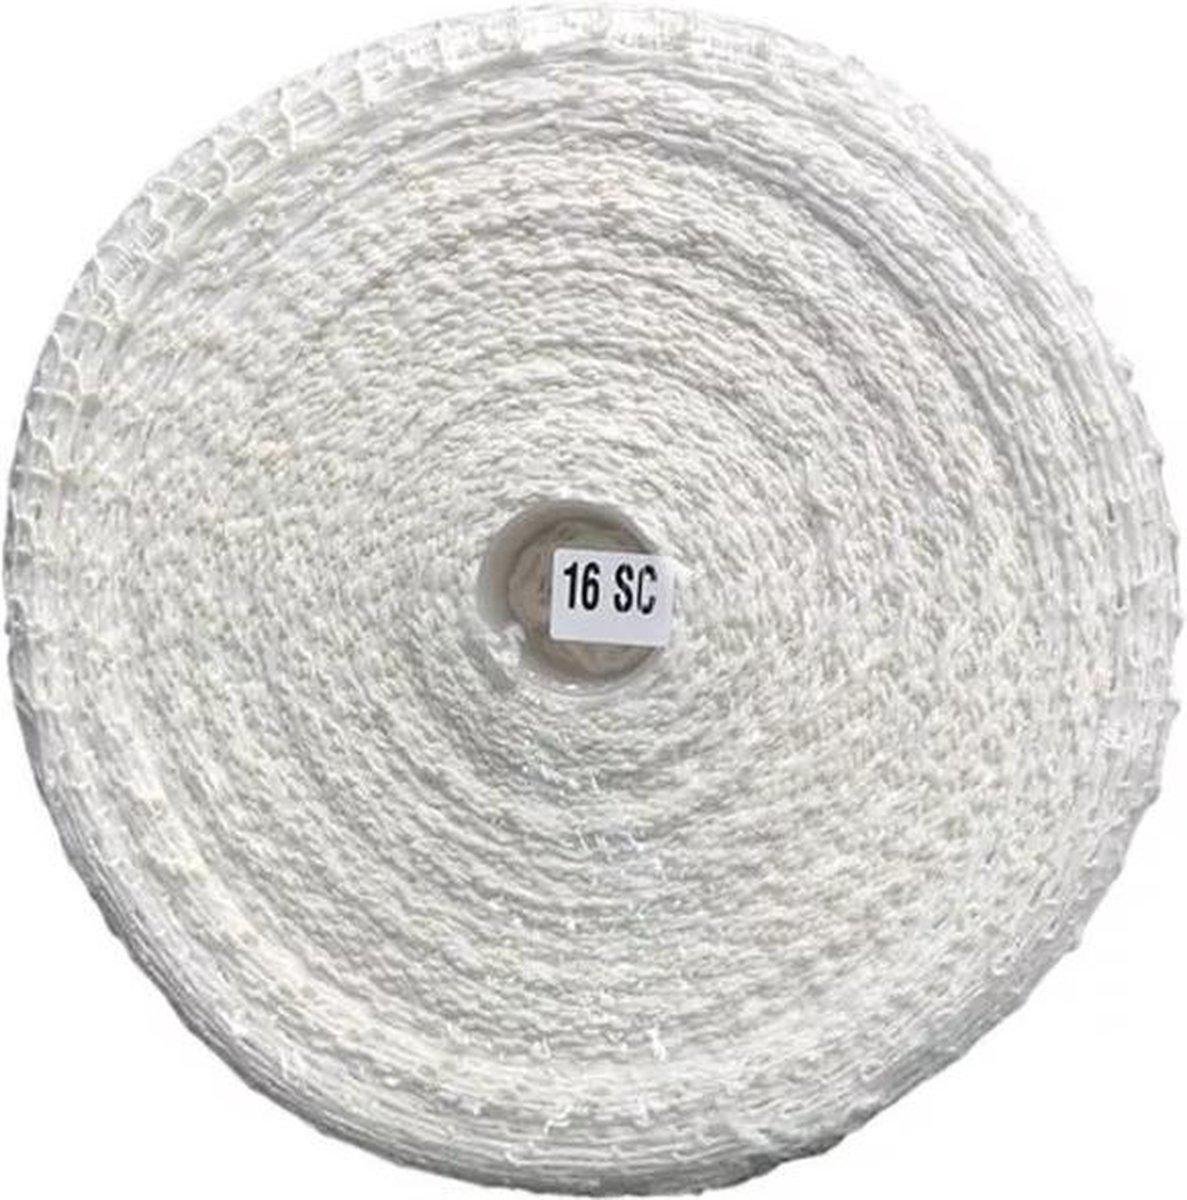 Rolladetouw - net voor rollade - 50 meter - R16 polyester wit Rolladenet - Merkloos